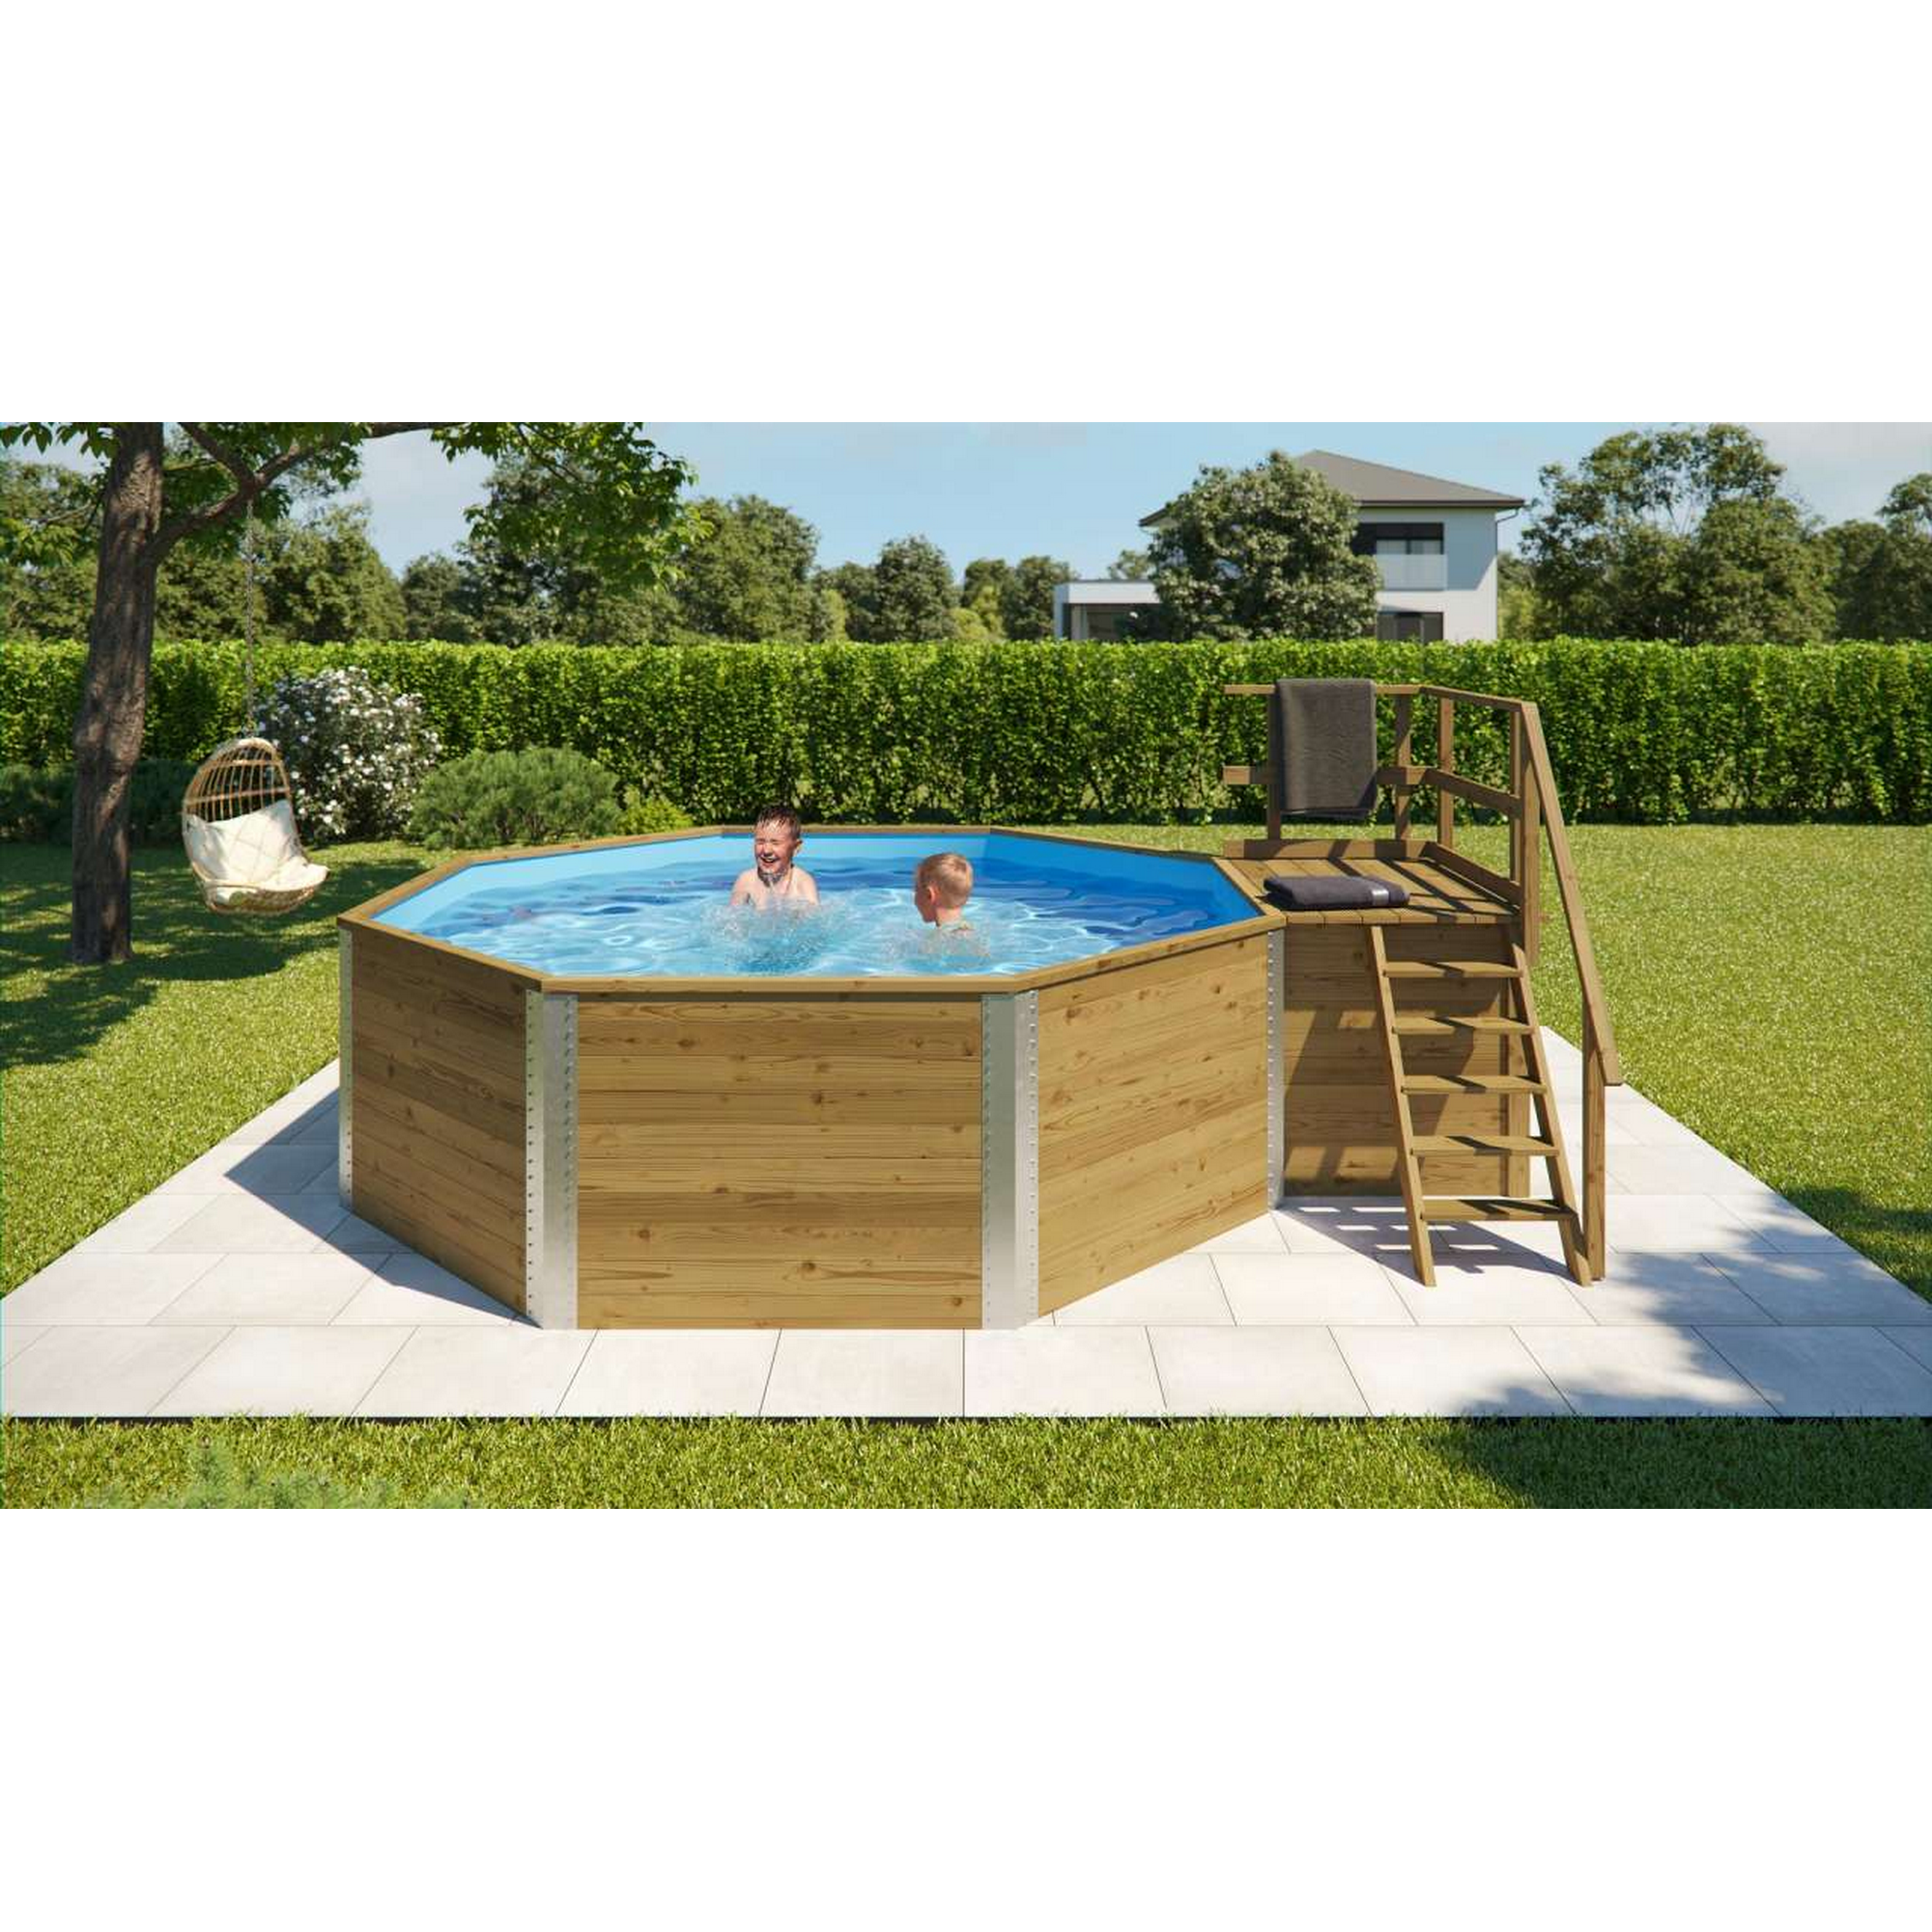 Massivholz-Pool '593 B Größe 1' achteckig, 376 x 376 x 116 cm, mit Technikraum und Sandfilteranlage + product picture